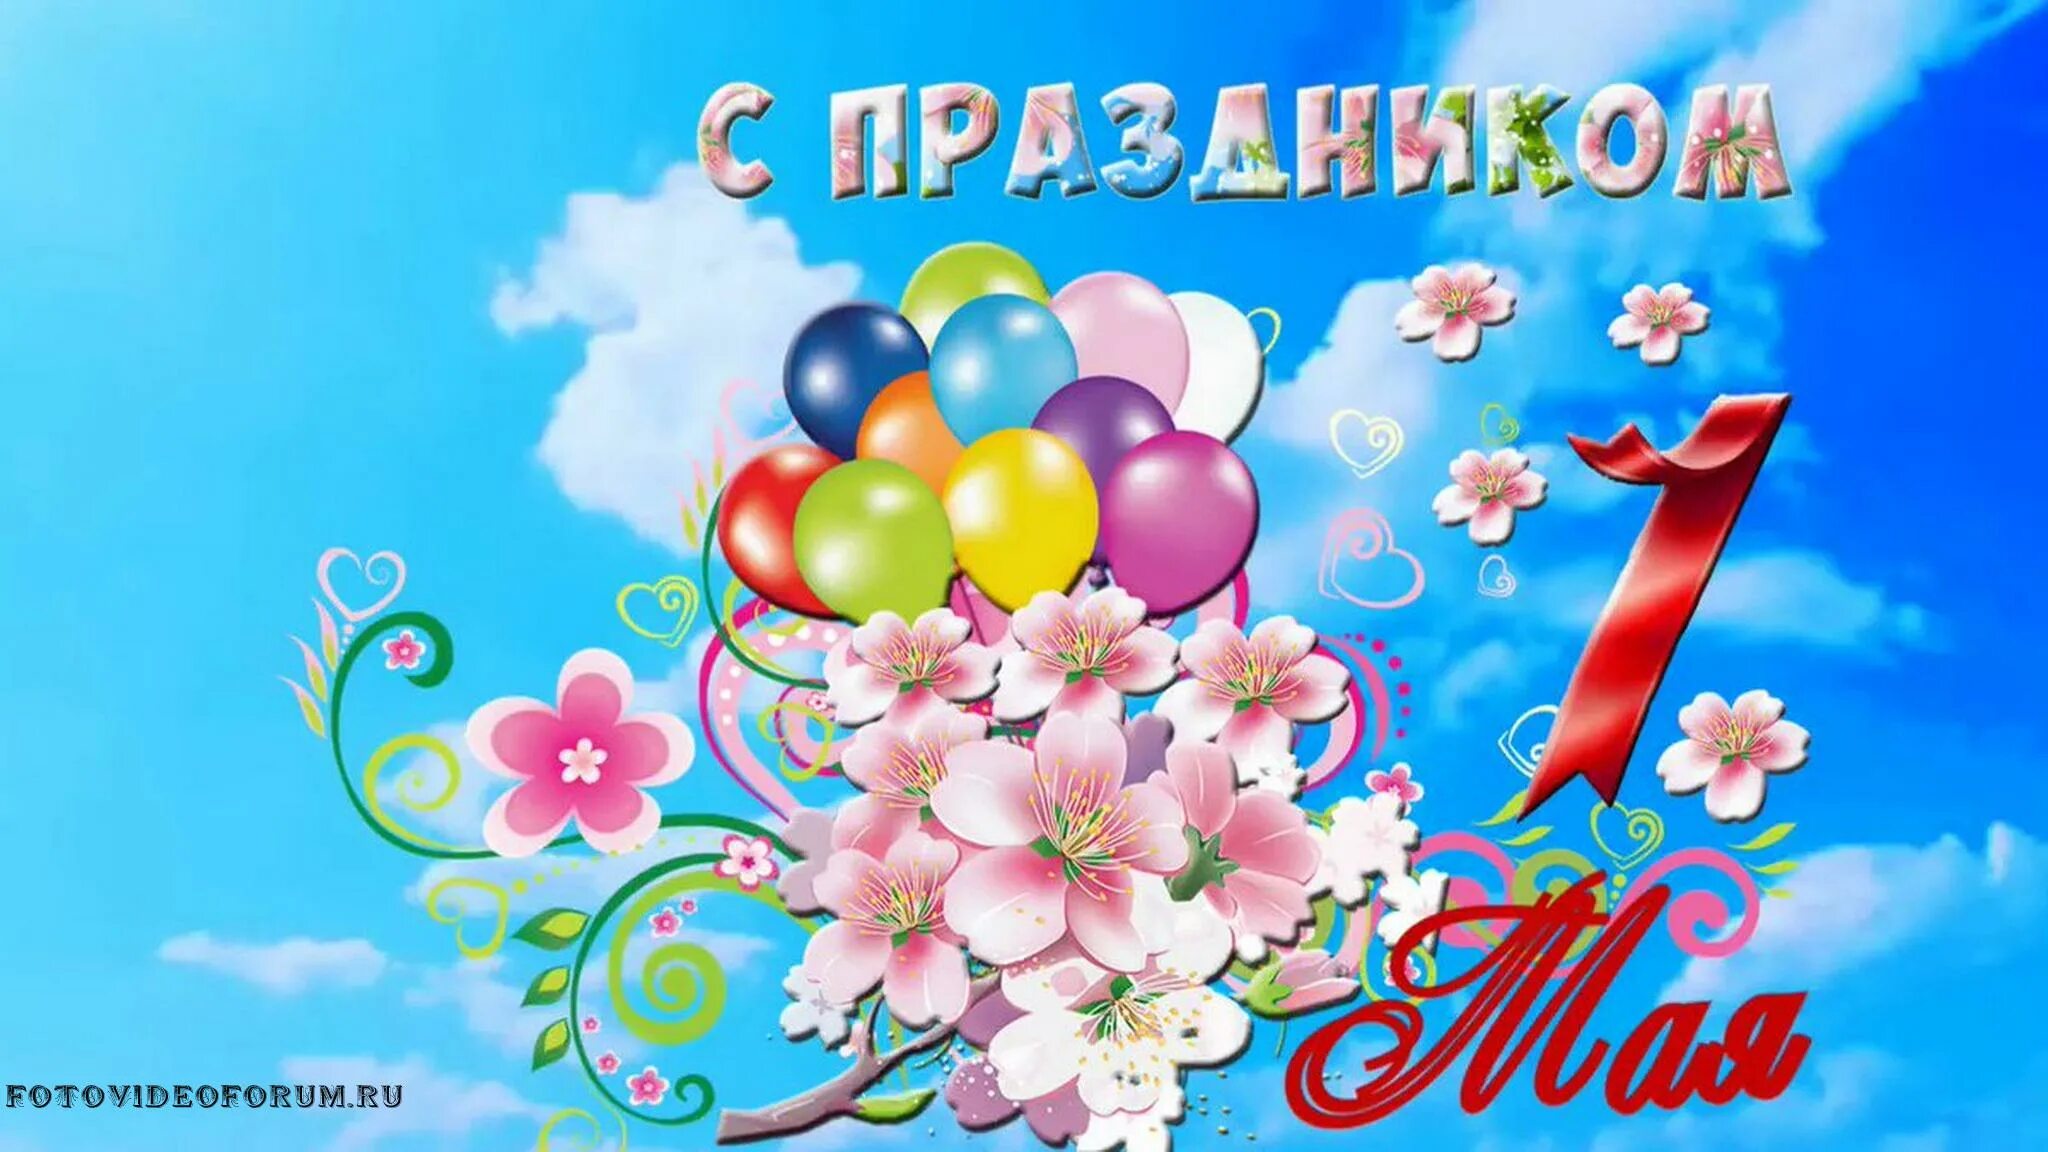 1 мая 2018 г. 1 Мая праздник. Праздник весны и трада. Поздравление с 1 мая. Открытки с 1 мая.